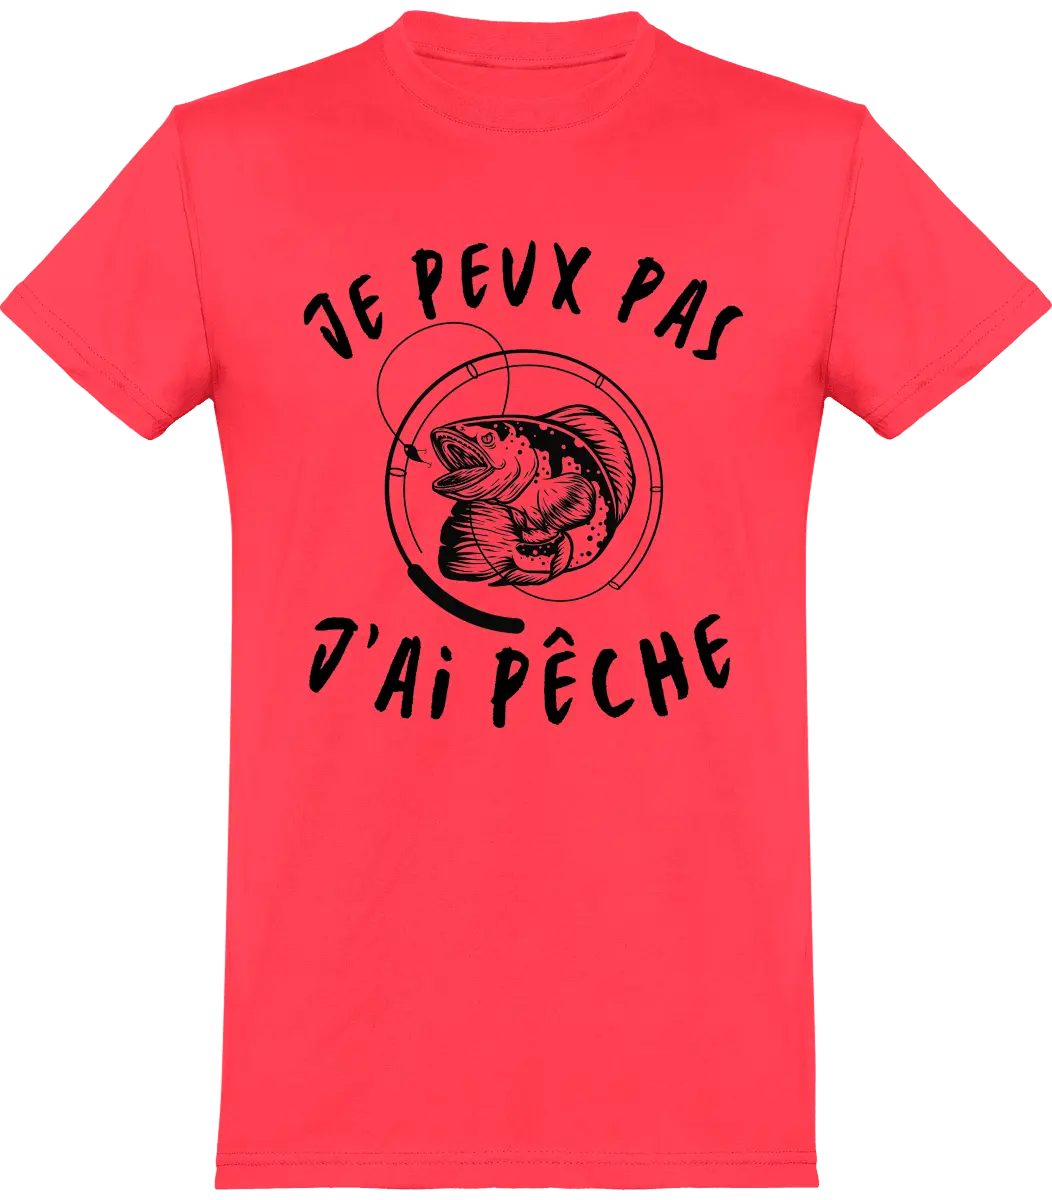 T-shirt j' Peux Pas, J'ai Pêche. Tee-shirt Idée Cadeau Pêche Et